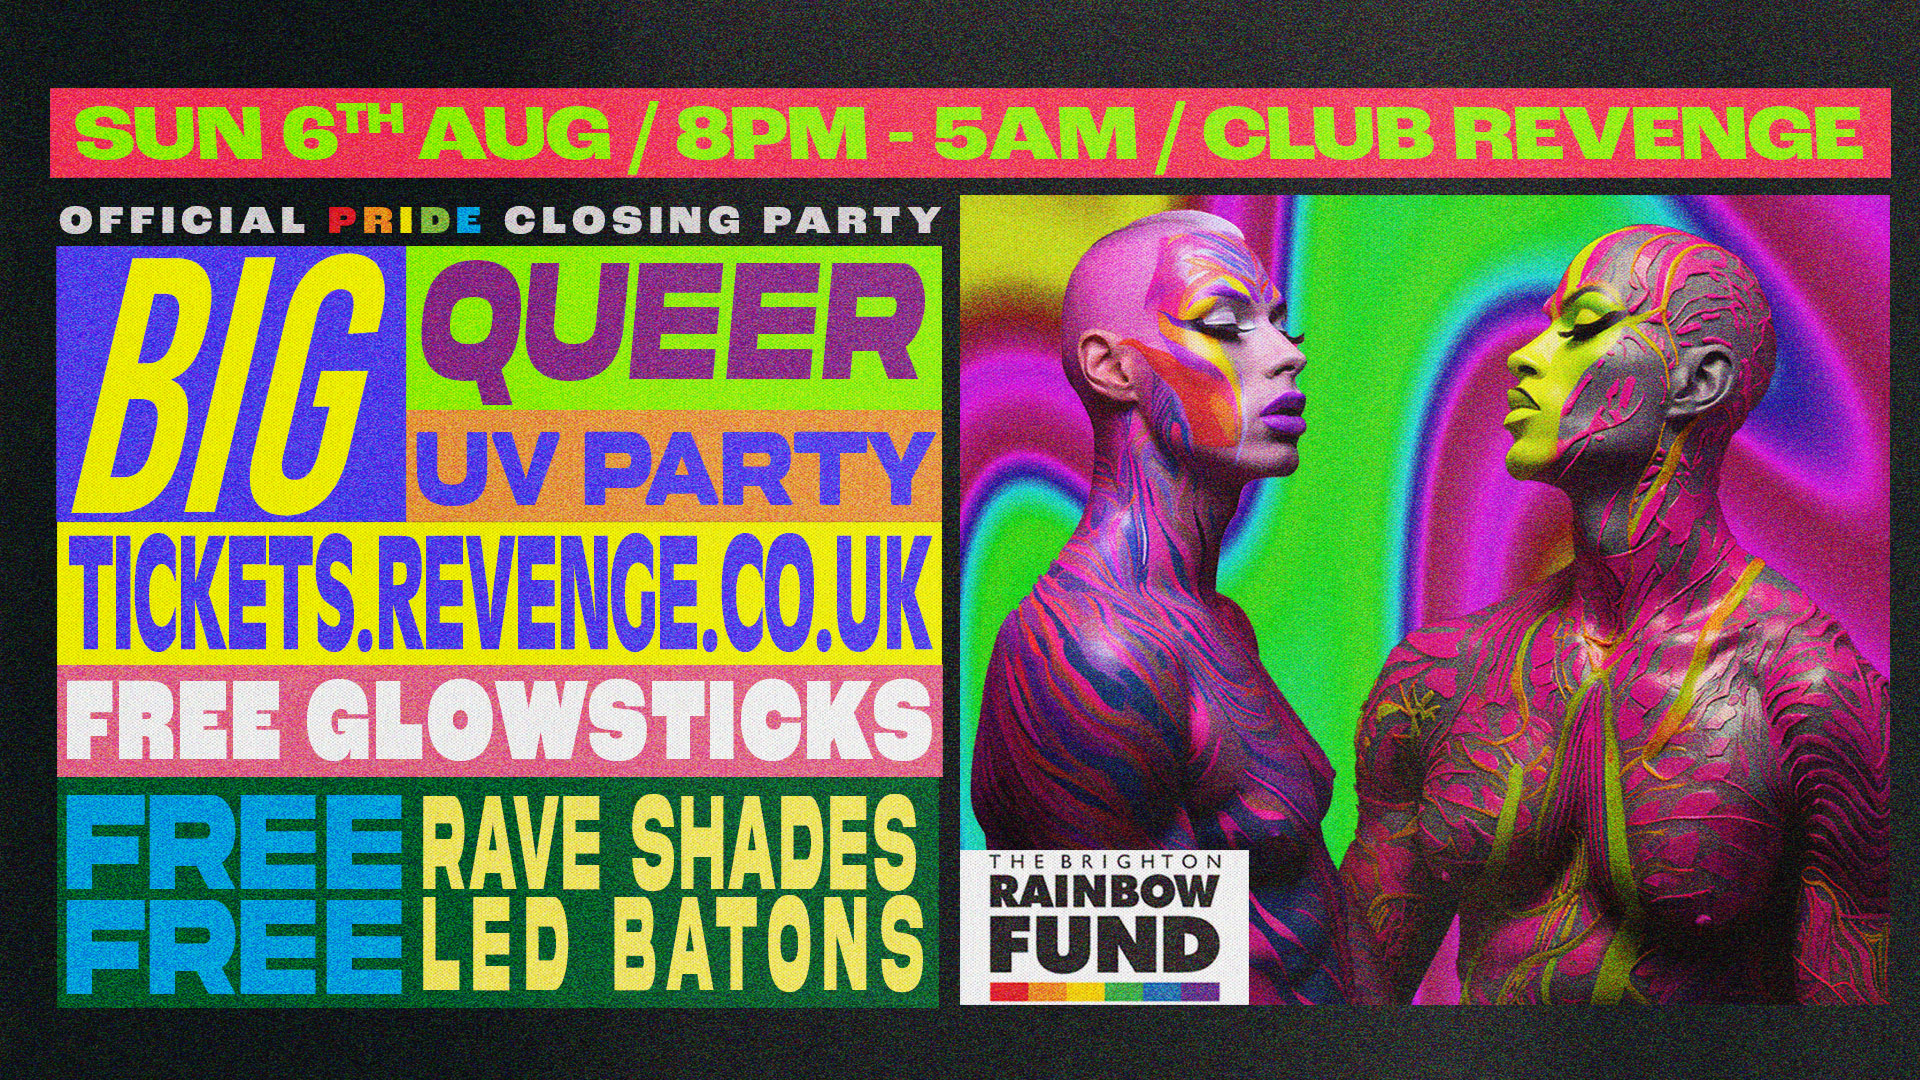 Big Queer Uv Party Brighton And Hove Pride